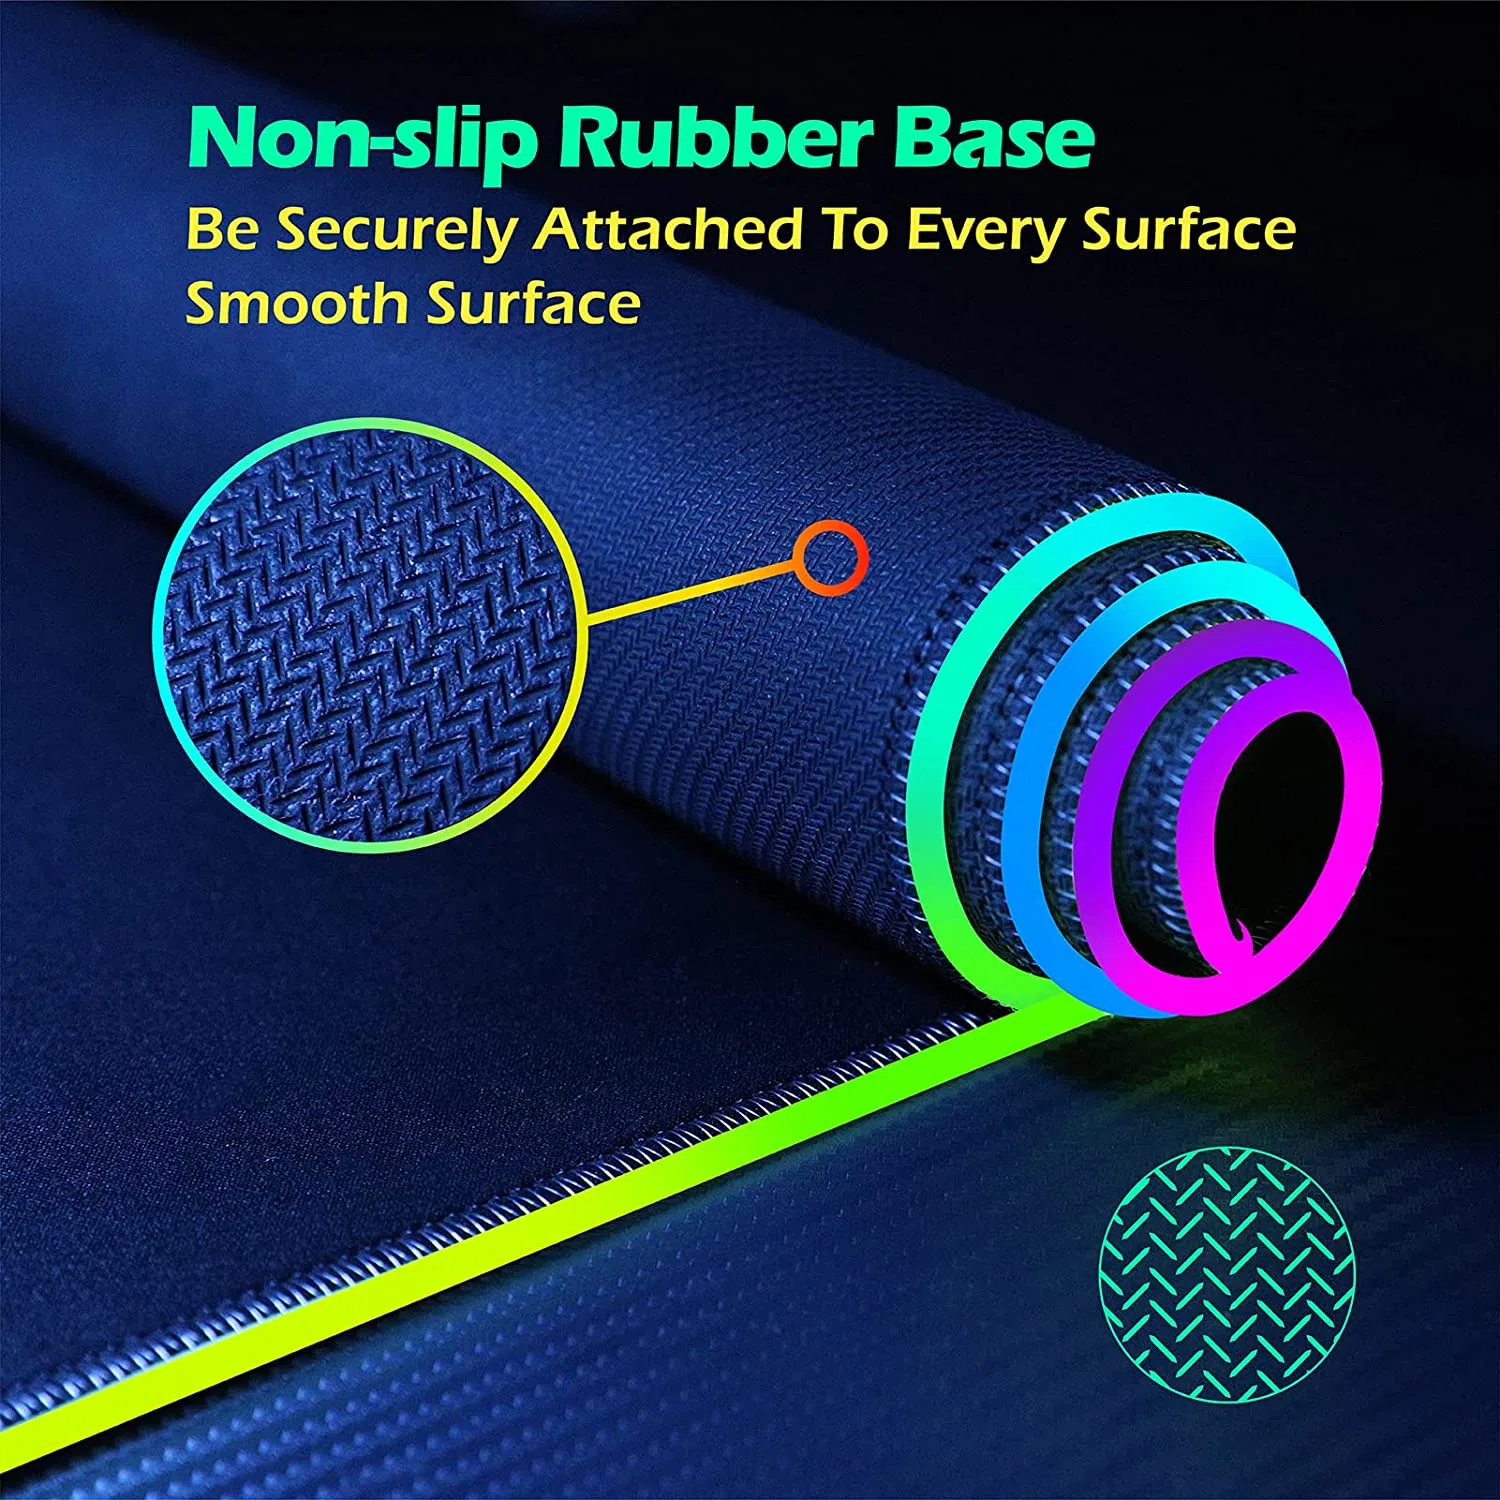 Беспроводной зарядки RGB Игровые мыши коврик под руководством большого Non-Slip резиновый коврик выполнен